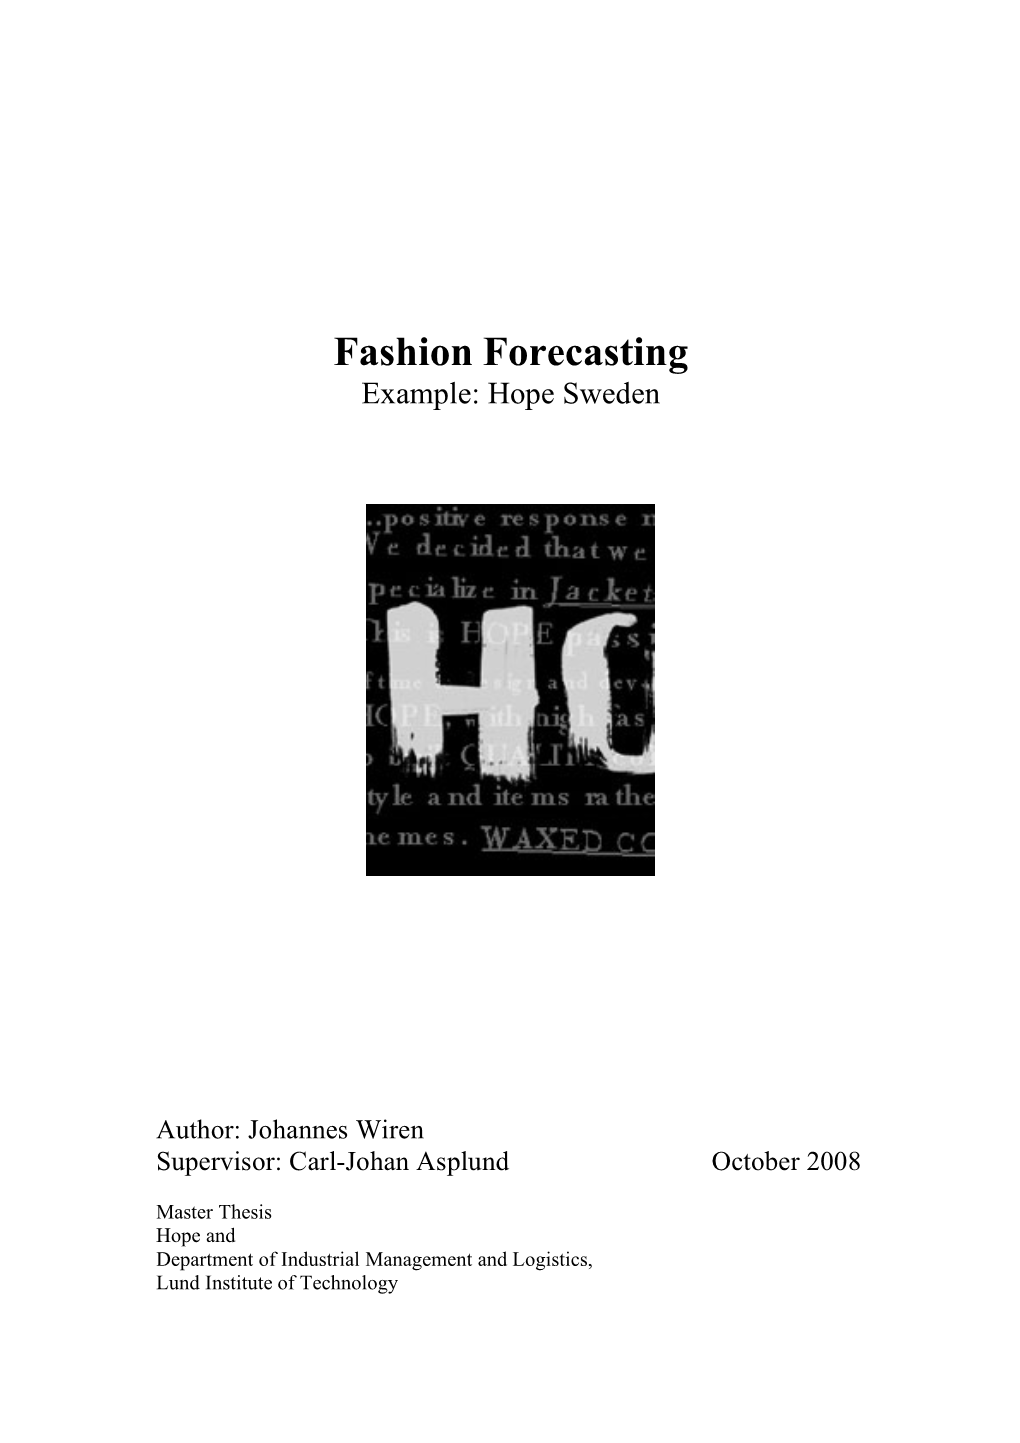 Fashion Forecasting Example: Hope Sweden